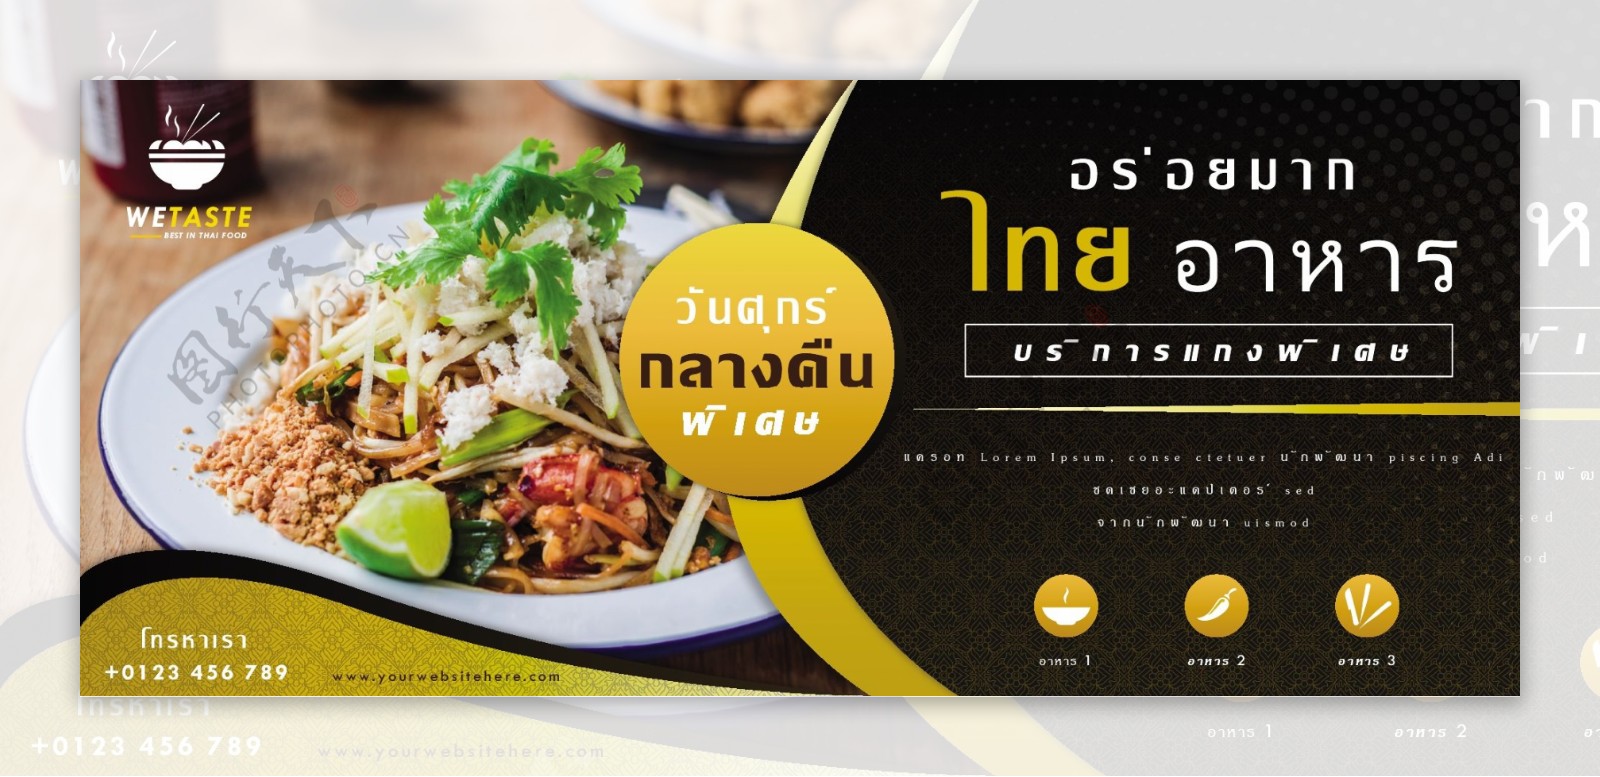 豪华泰国食物横幅设计